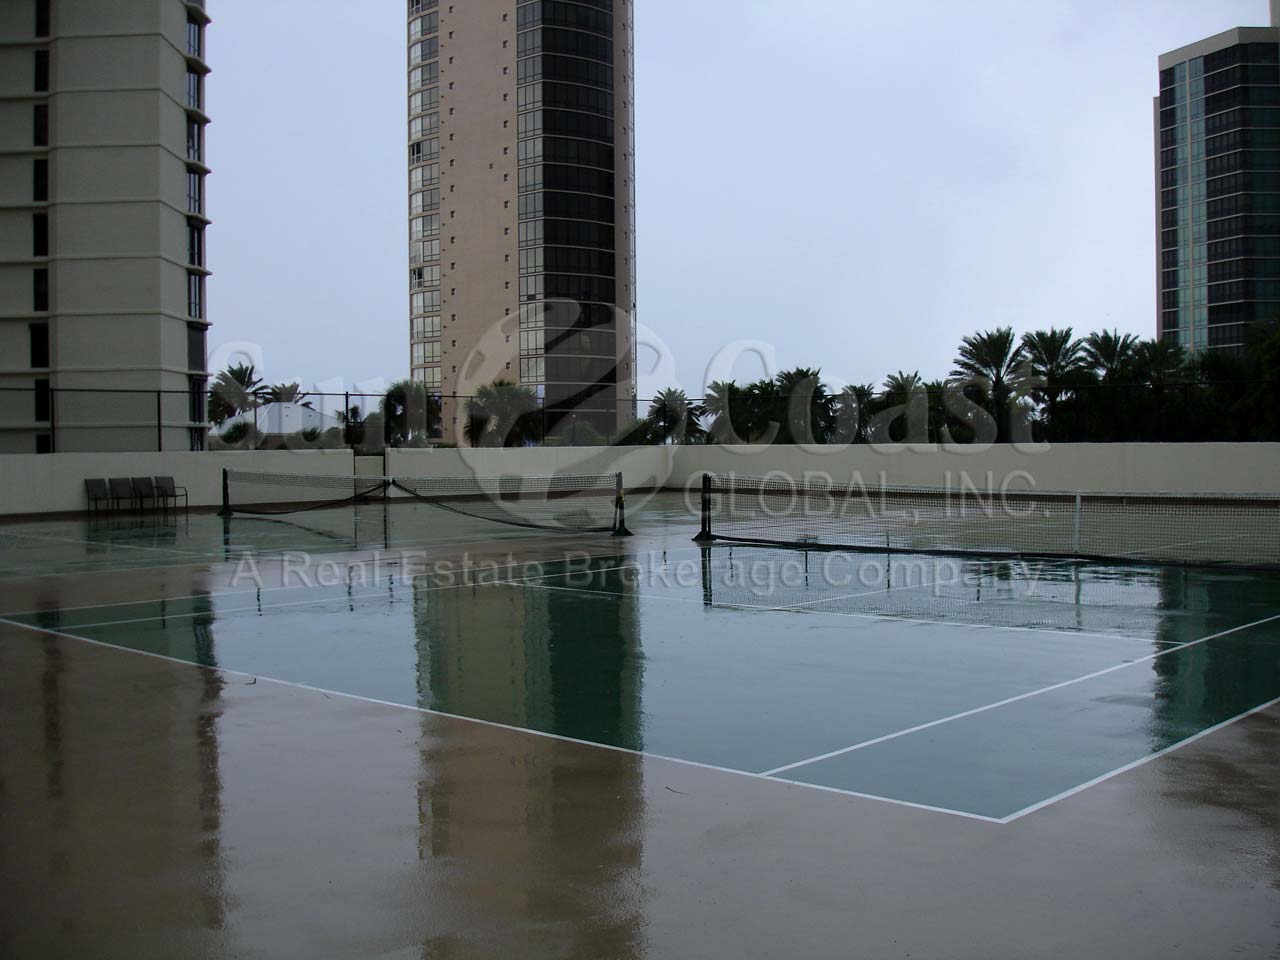 Esplanade Club Tennis Courts